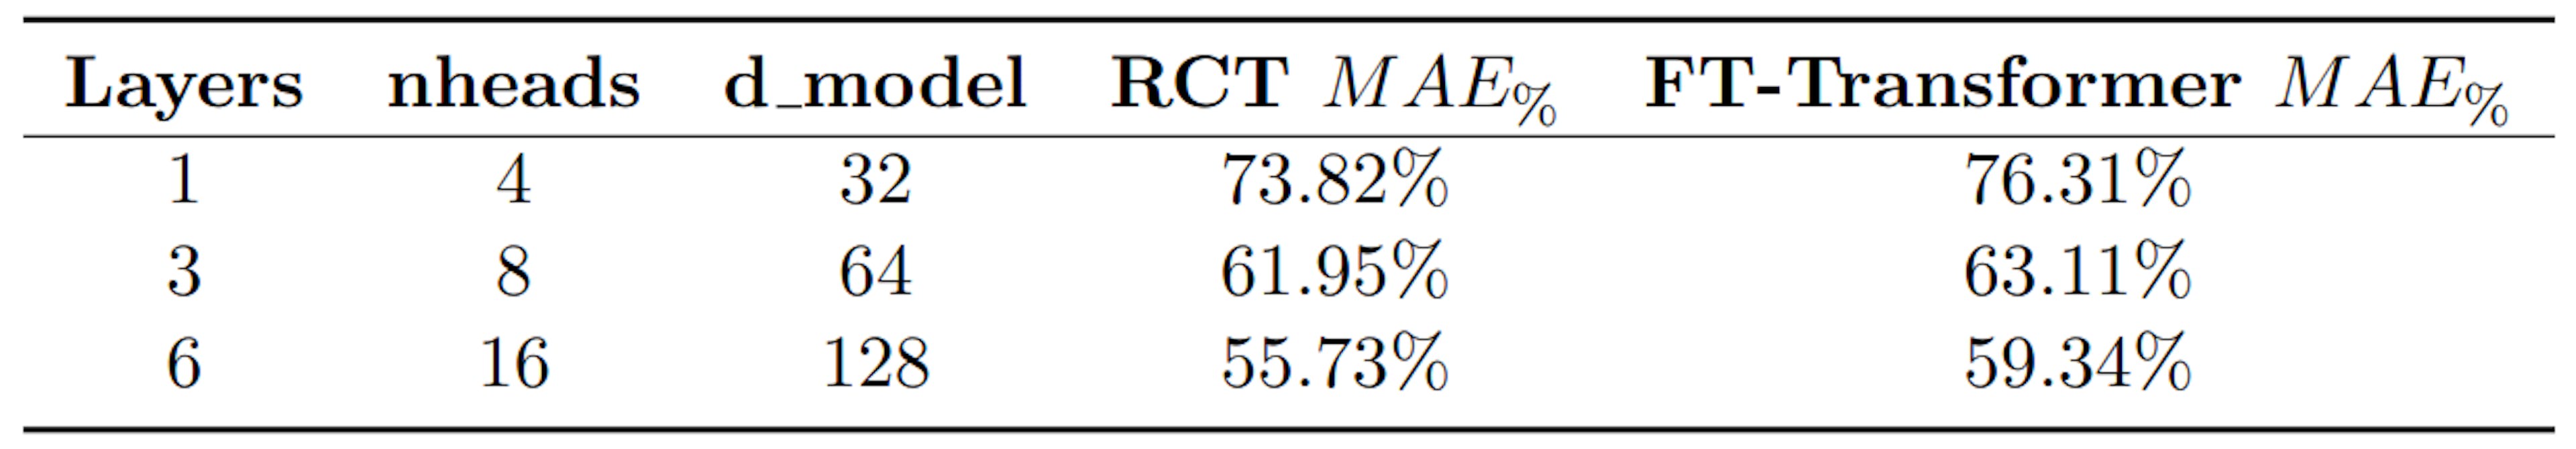 Bảng 2: So sánh MAE% giữa RCT và FT-Transformer (SOTA cho các mô hình tự chú ý)